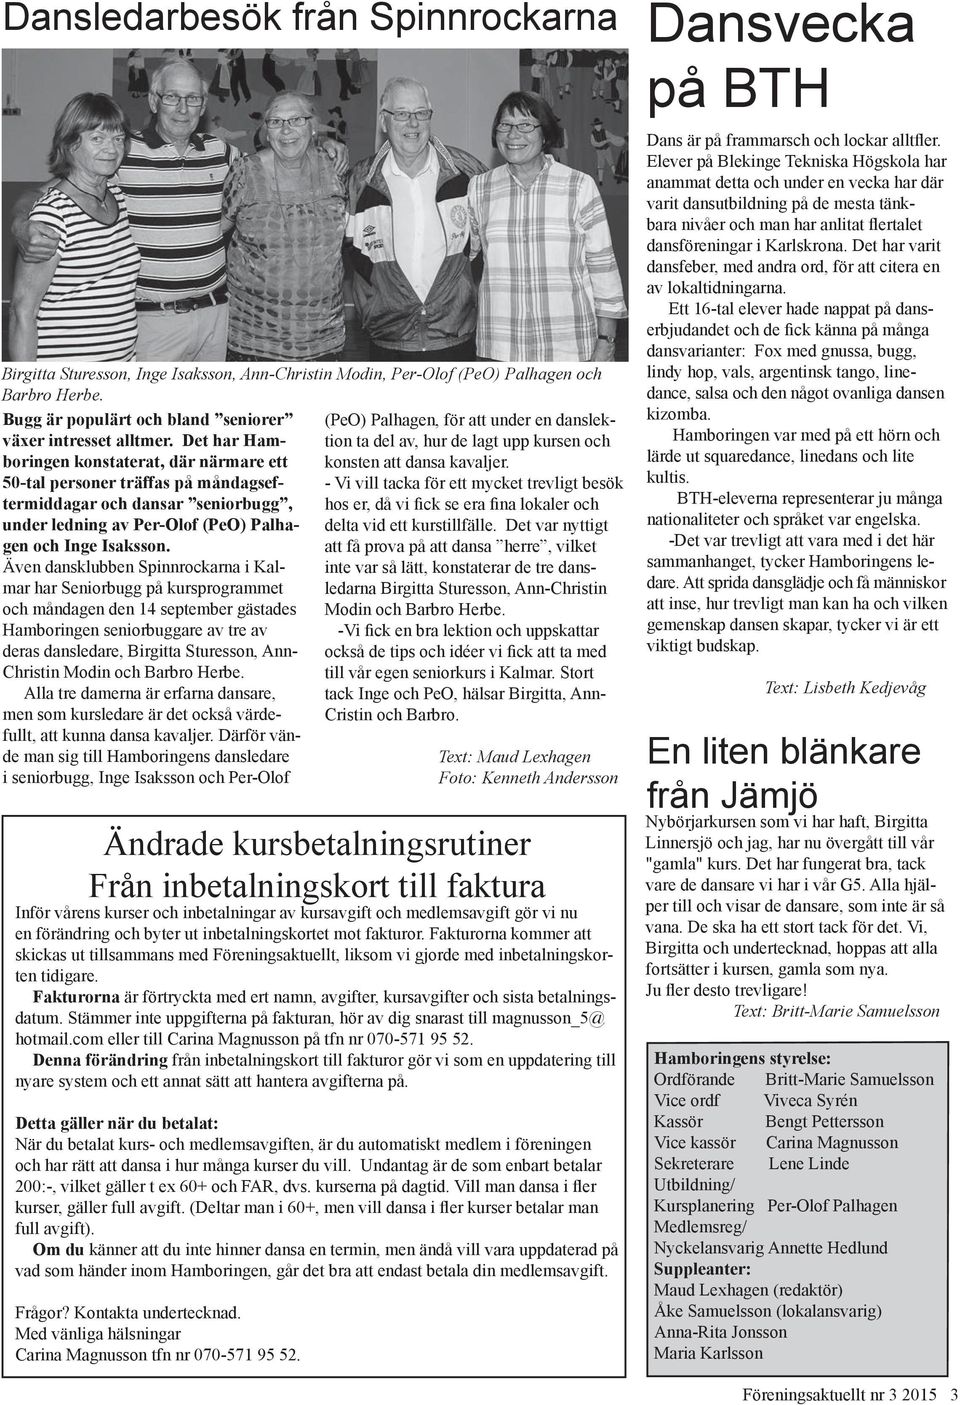 Även dansklubben Spinnrockarna i Kalmar har Seniorbugg på kursprogrammet och måndagen den 14 september gästades Hamboringen seniorbuggare av tre av deras dansledare, Birgitta Sturesson, Ann- Christin